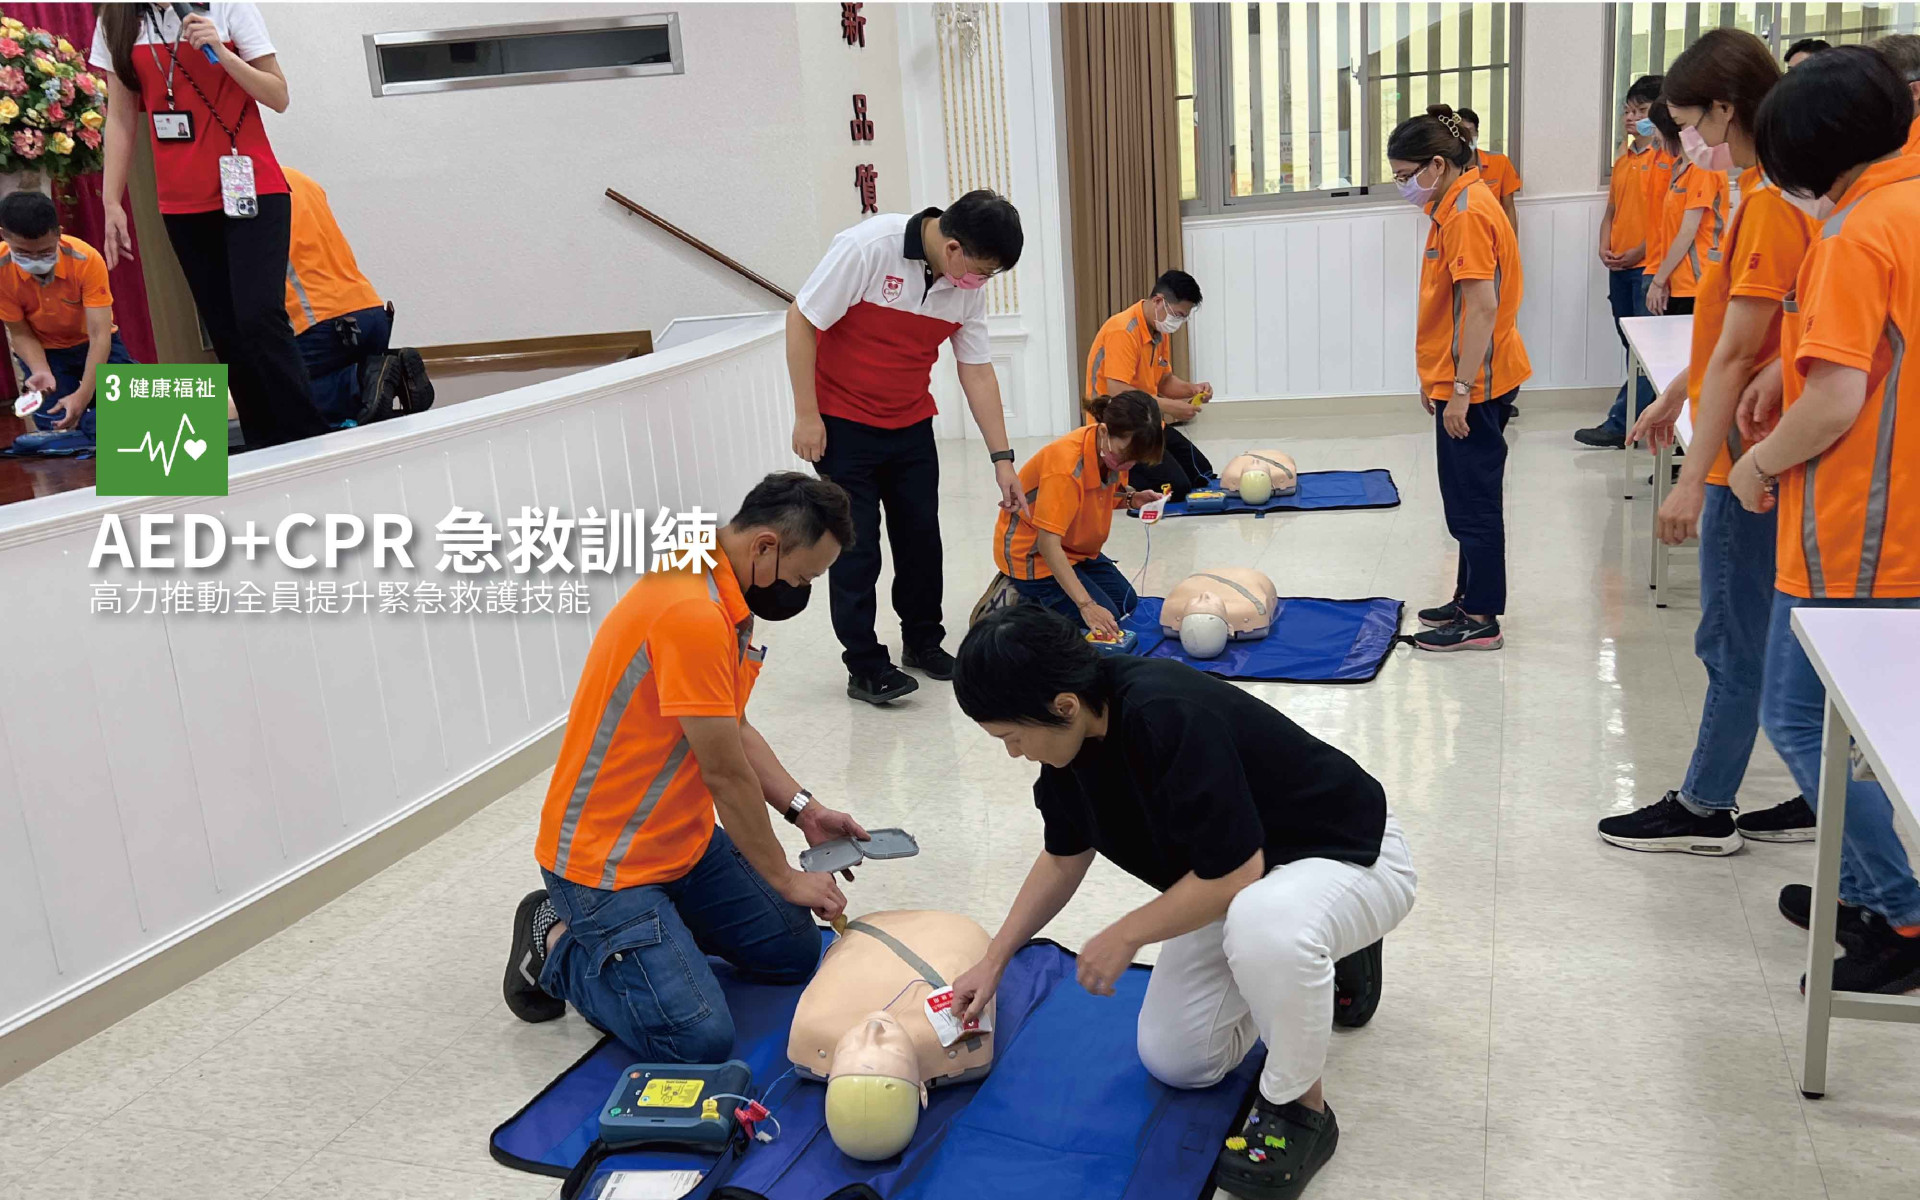  提升緊急救護技能高力推動全員CPR+AED訓練 